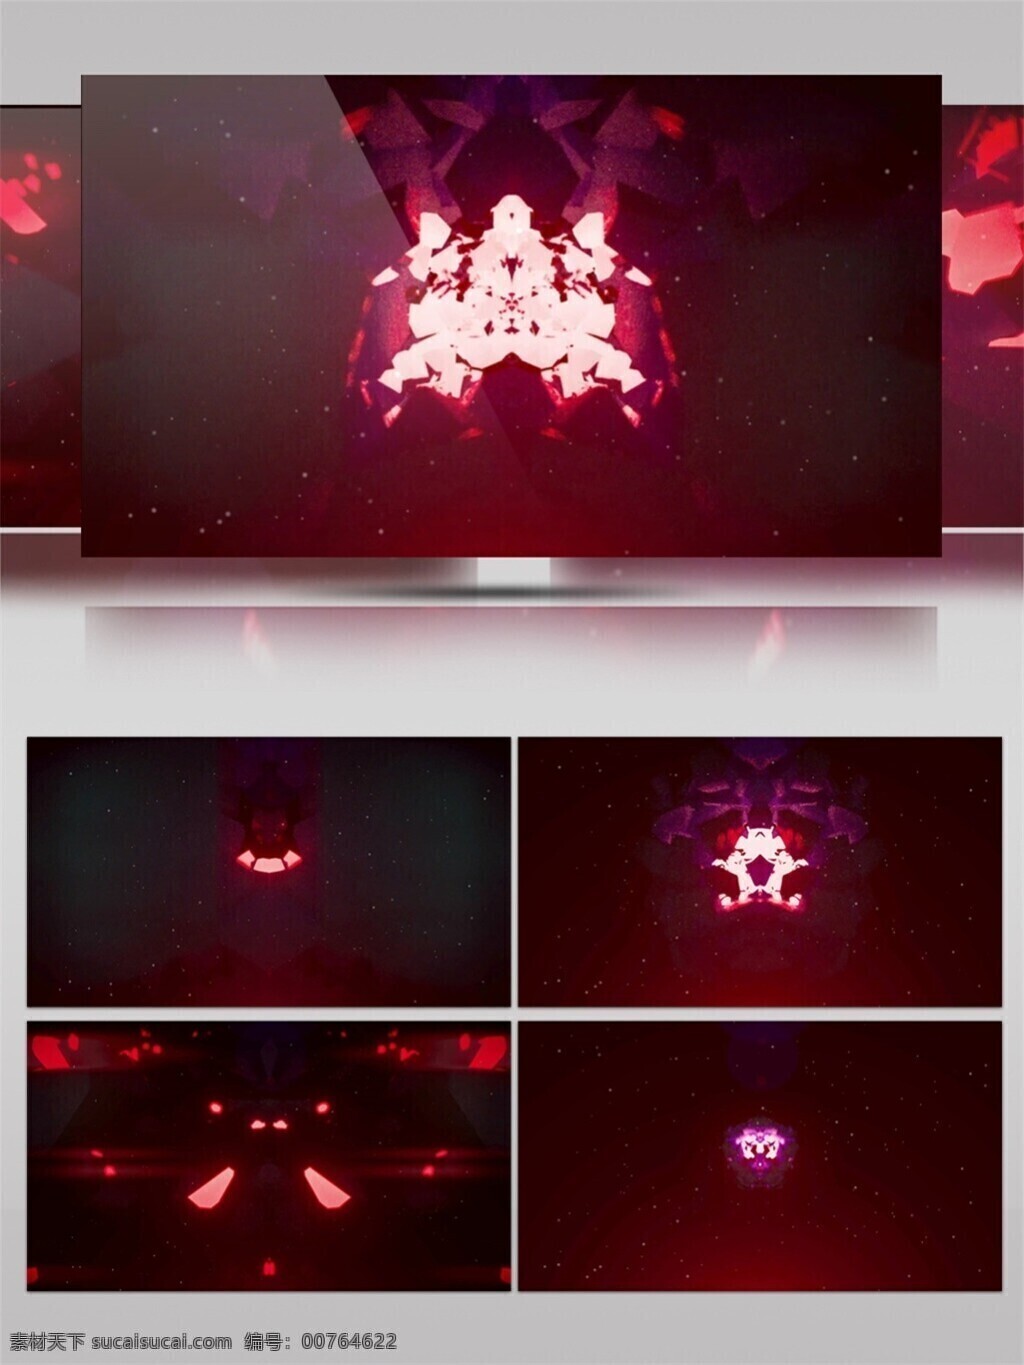 光波 光束 红色 节目灯光 视觉享受 唯美背景素材 螺旋 舞台 动态 视频